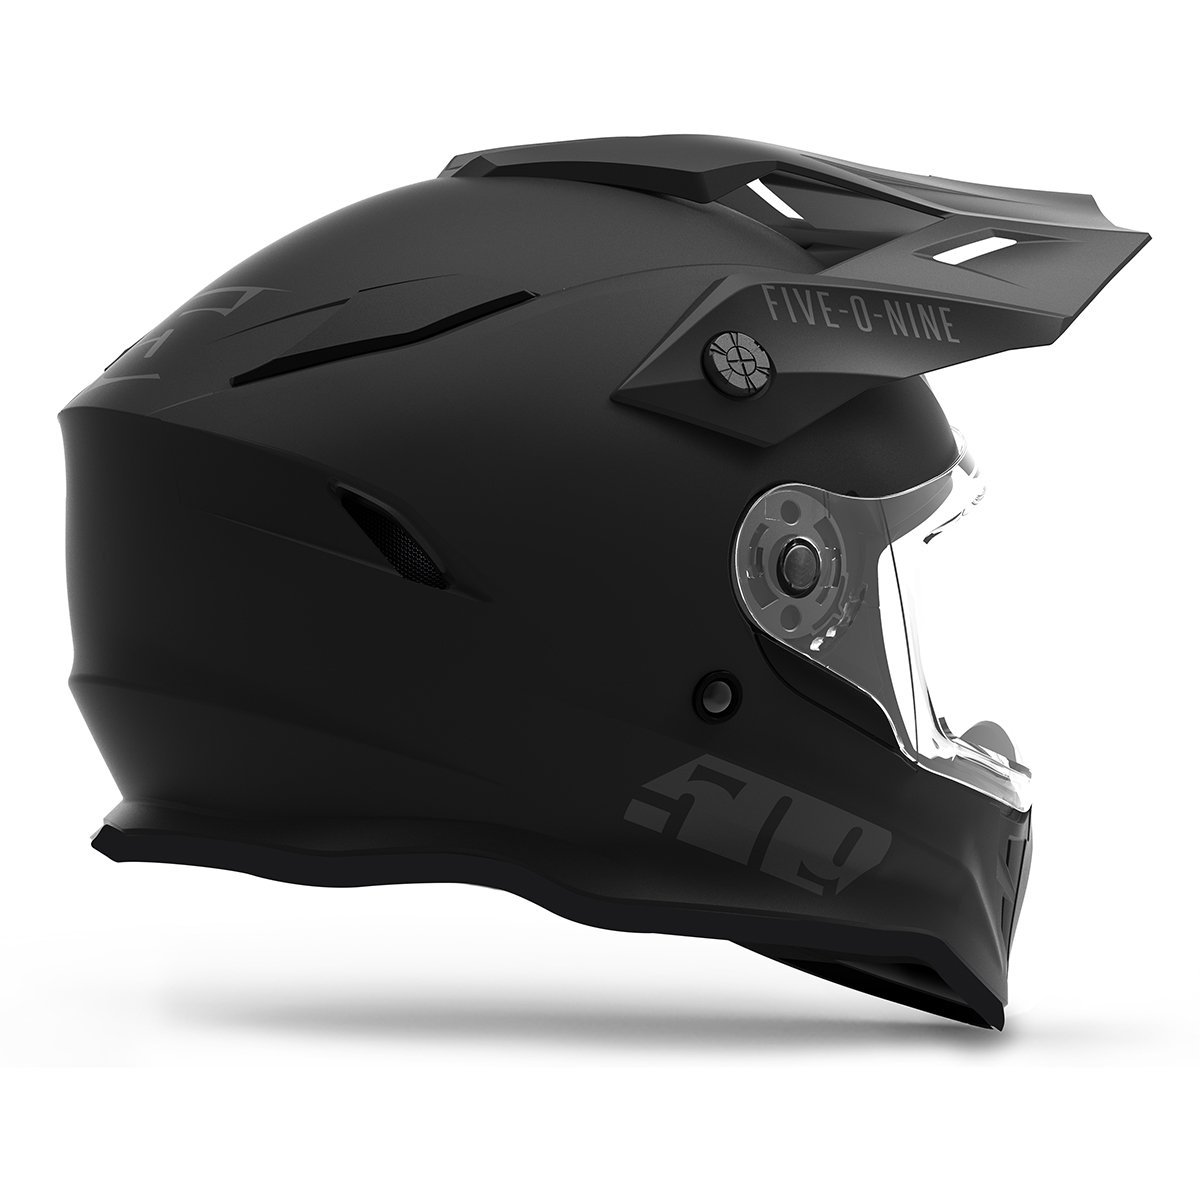 Шлем с подогревом визора 509 Delta R3 Ignite